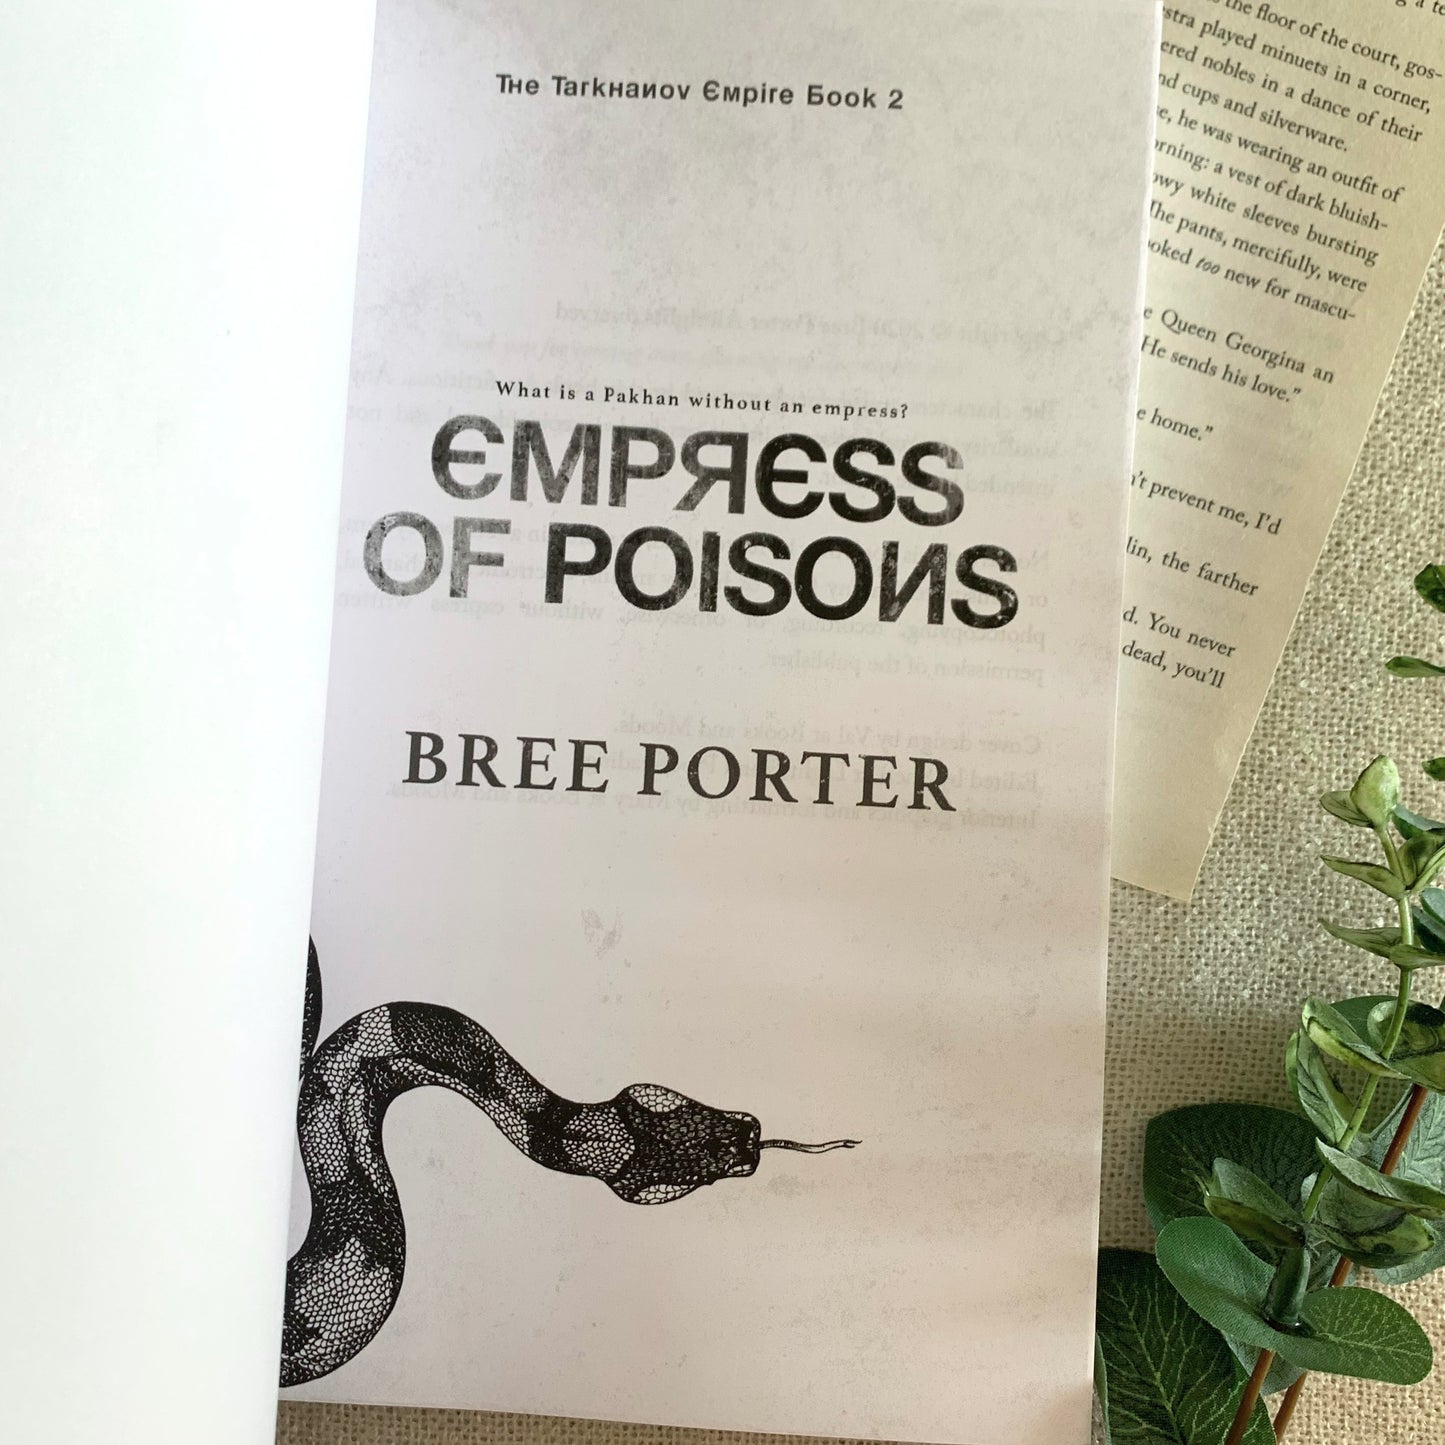 The Tarkhanov Empire series by Bree Porter